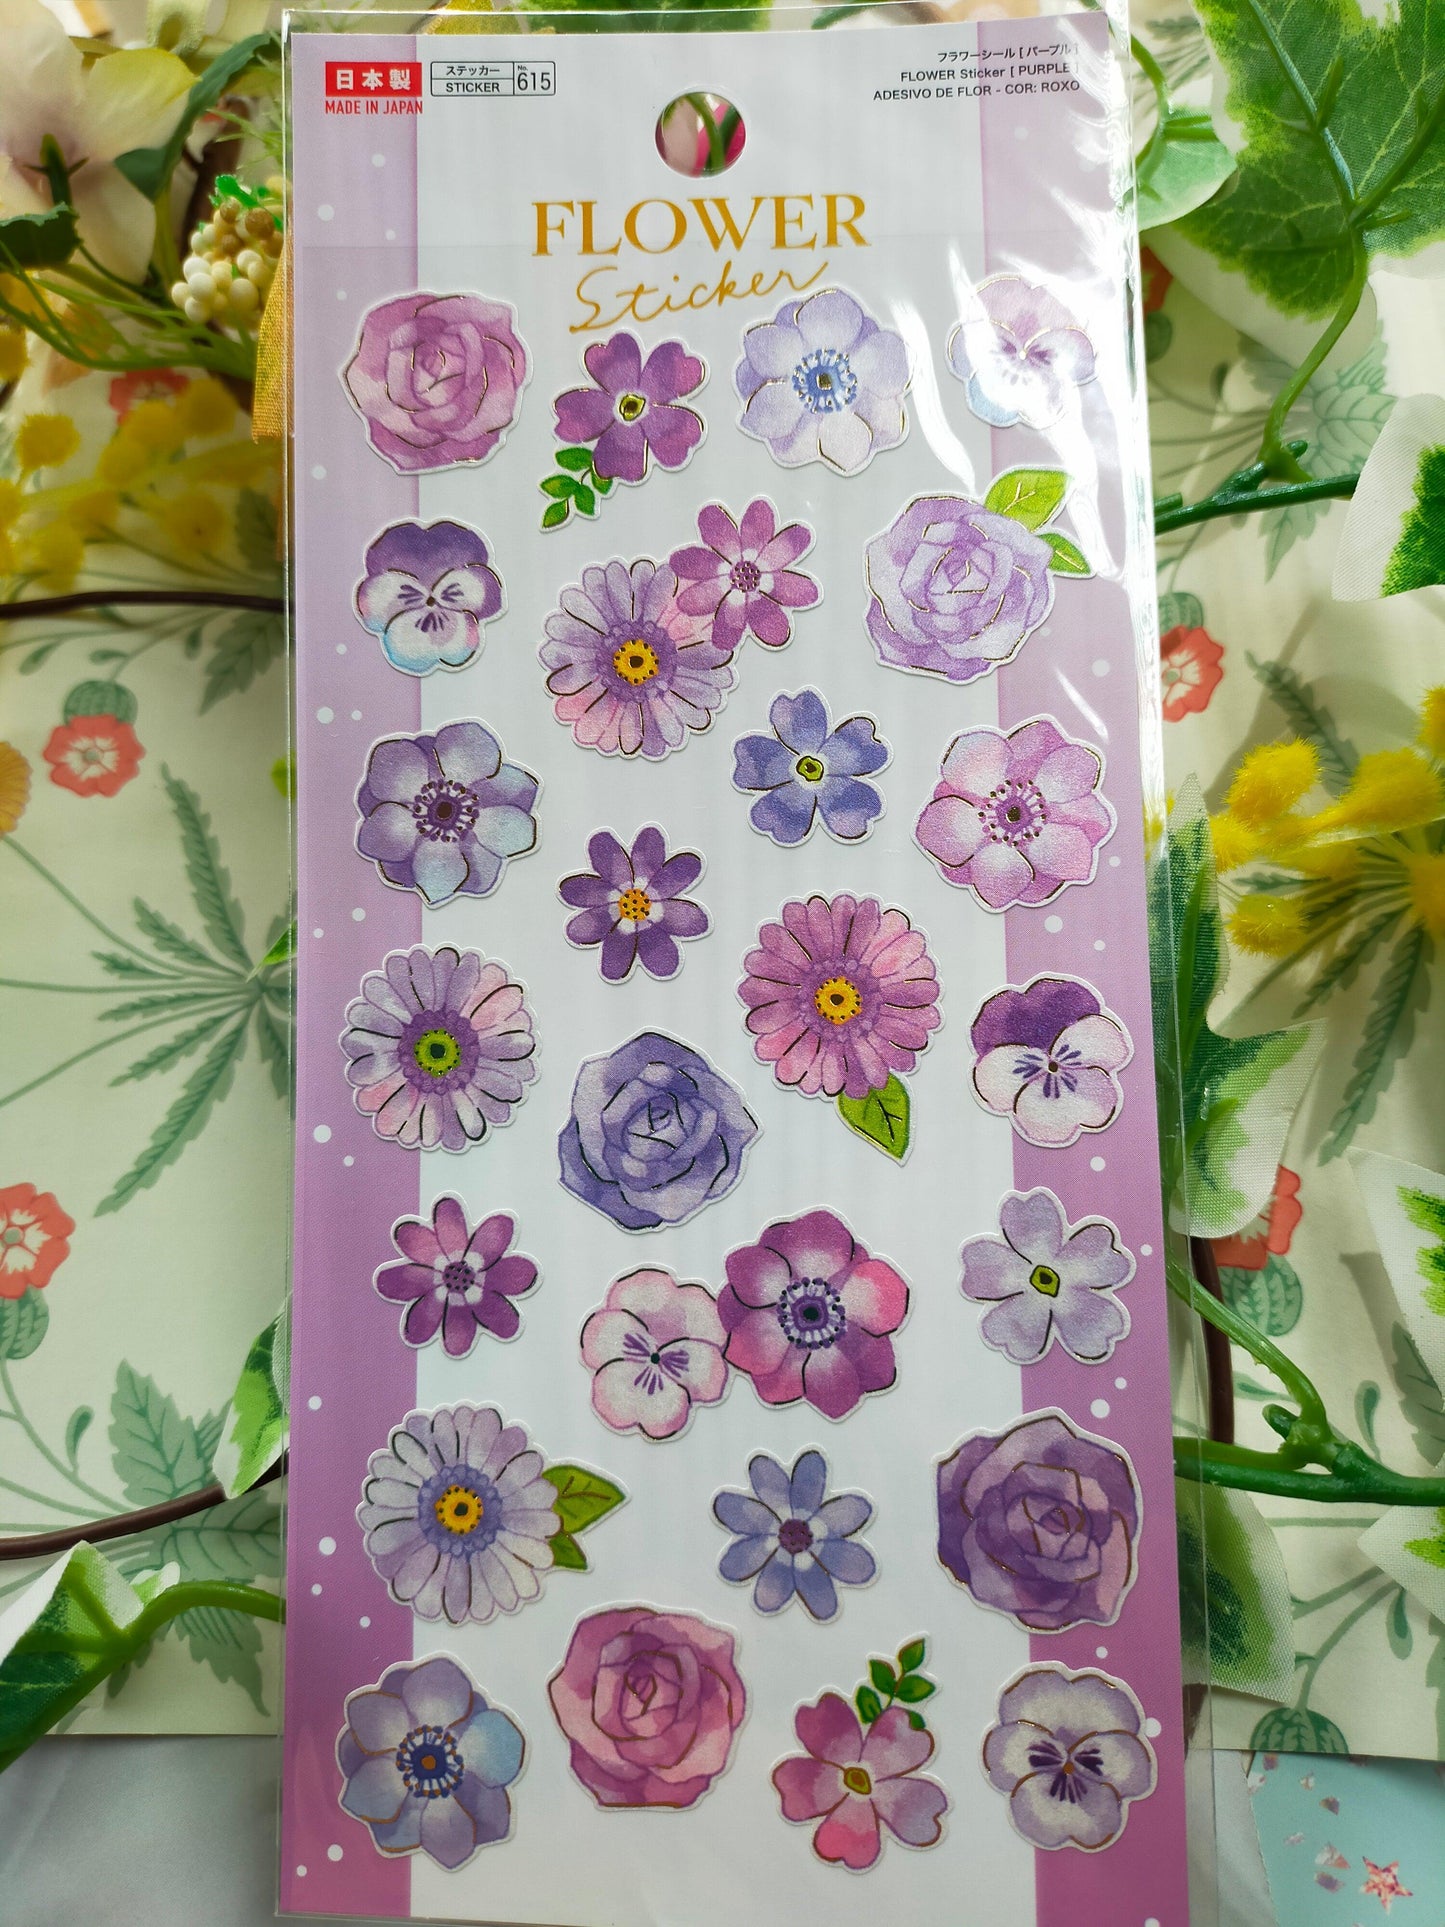 FLOWER Sticker,daiso sticker_Light Green /Pink/Yellow /Green /Blue /Purple